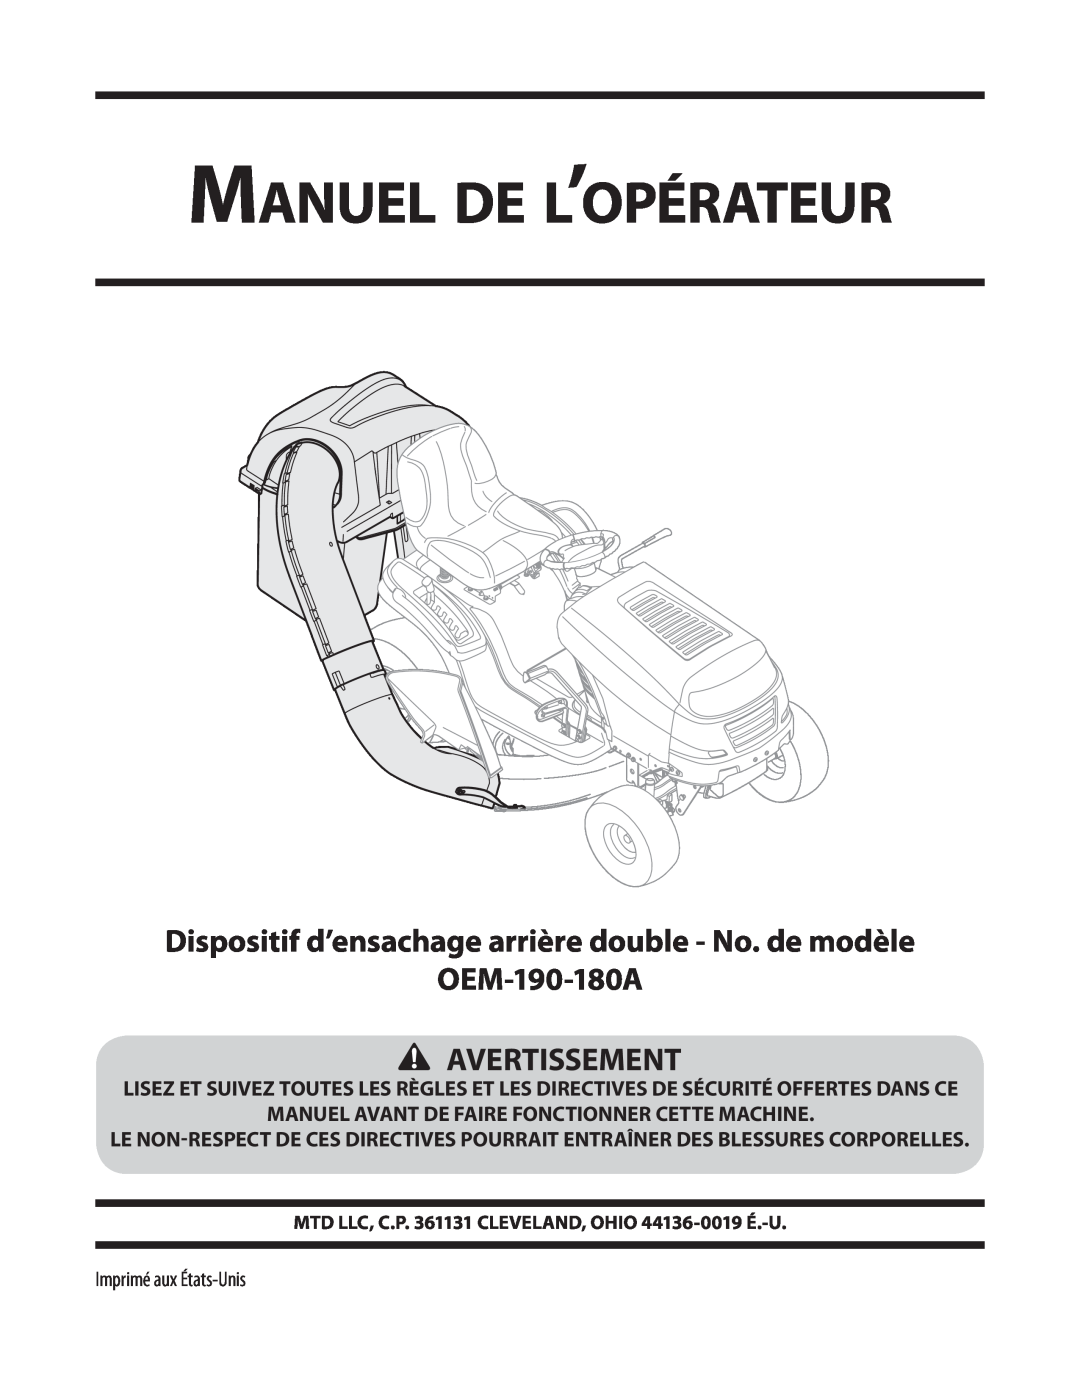 MTD 19A30002000 Manuel de l’opérateur, Dispositif d’ensachage arrière double - No. de modèle OEM-190-180A, Avertissement 